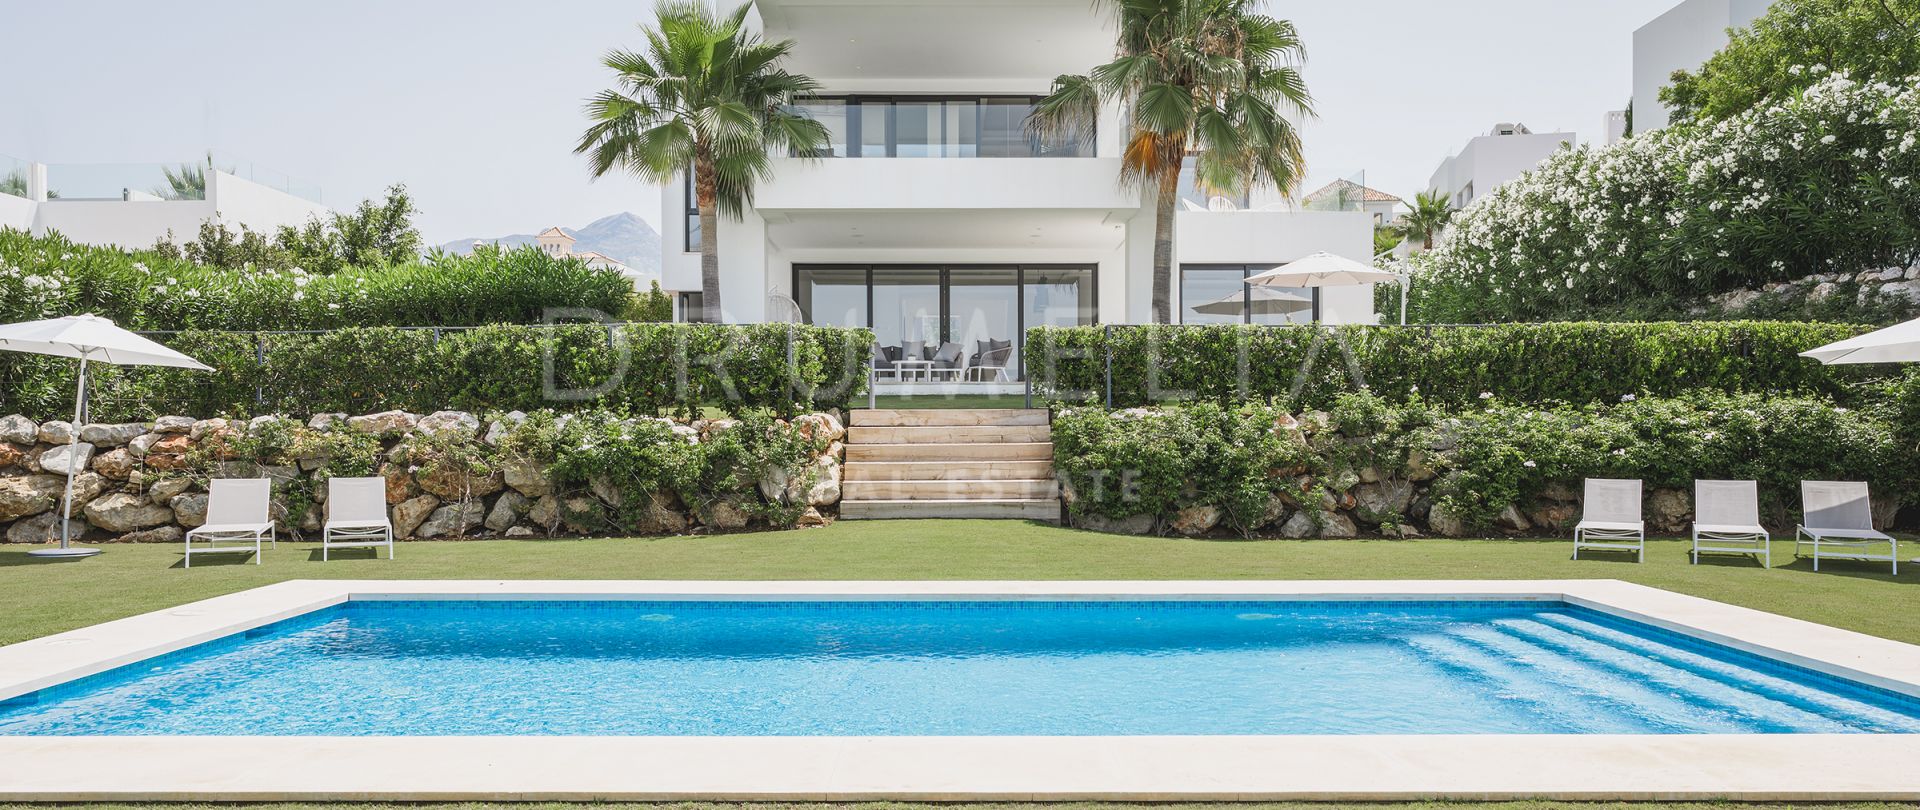 Nueva villa contemporánea de alta gama para un estilo de vida moderno, Los Olivos,Nueva Andalucía